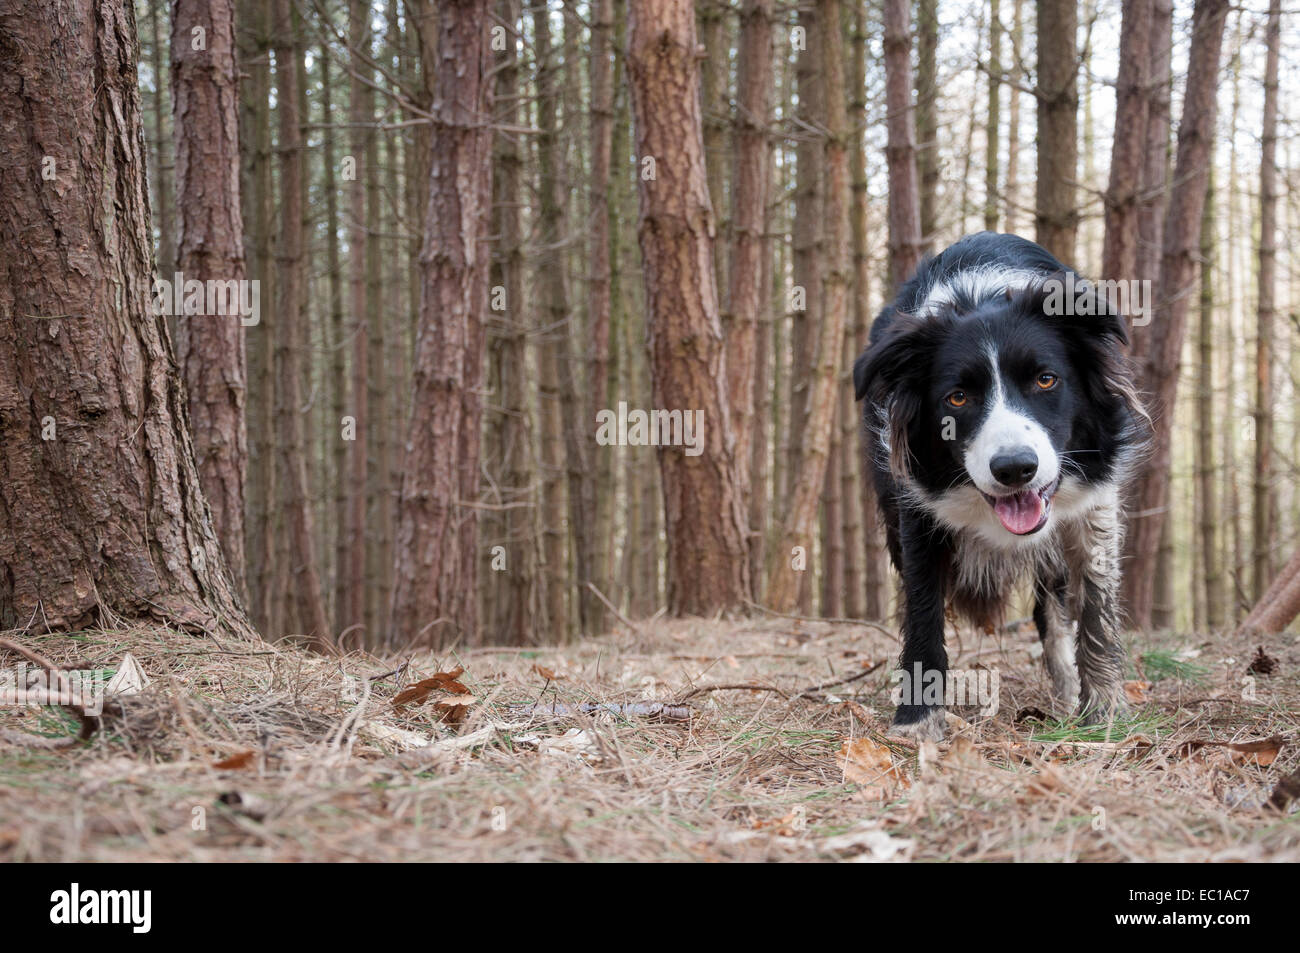 Border-Collie Hund Stand in einem Wald von Föhren. Hund, gerichtete Kamera mit schlammigen Pfoten und lächelndes Gesicht. Stockfoto